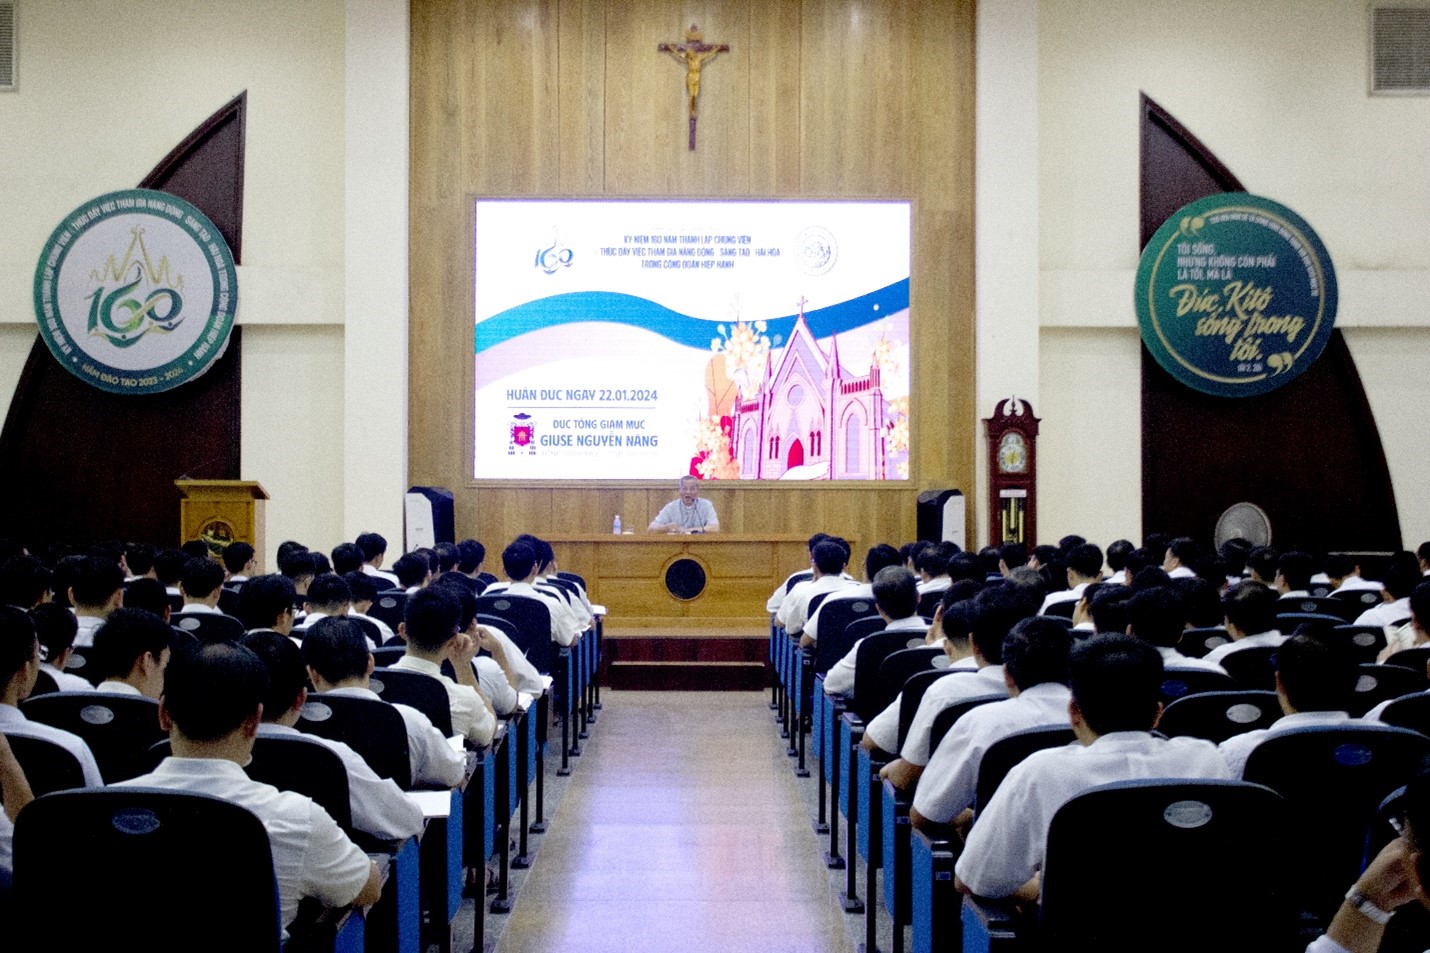 ĐCV Thánh Giuse Sài Gòn: Đức TGM Giuse huấn đức các Chủng Sinh